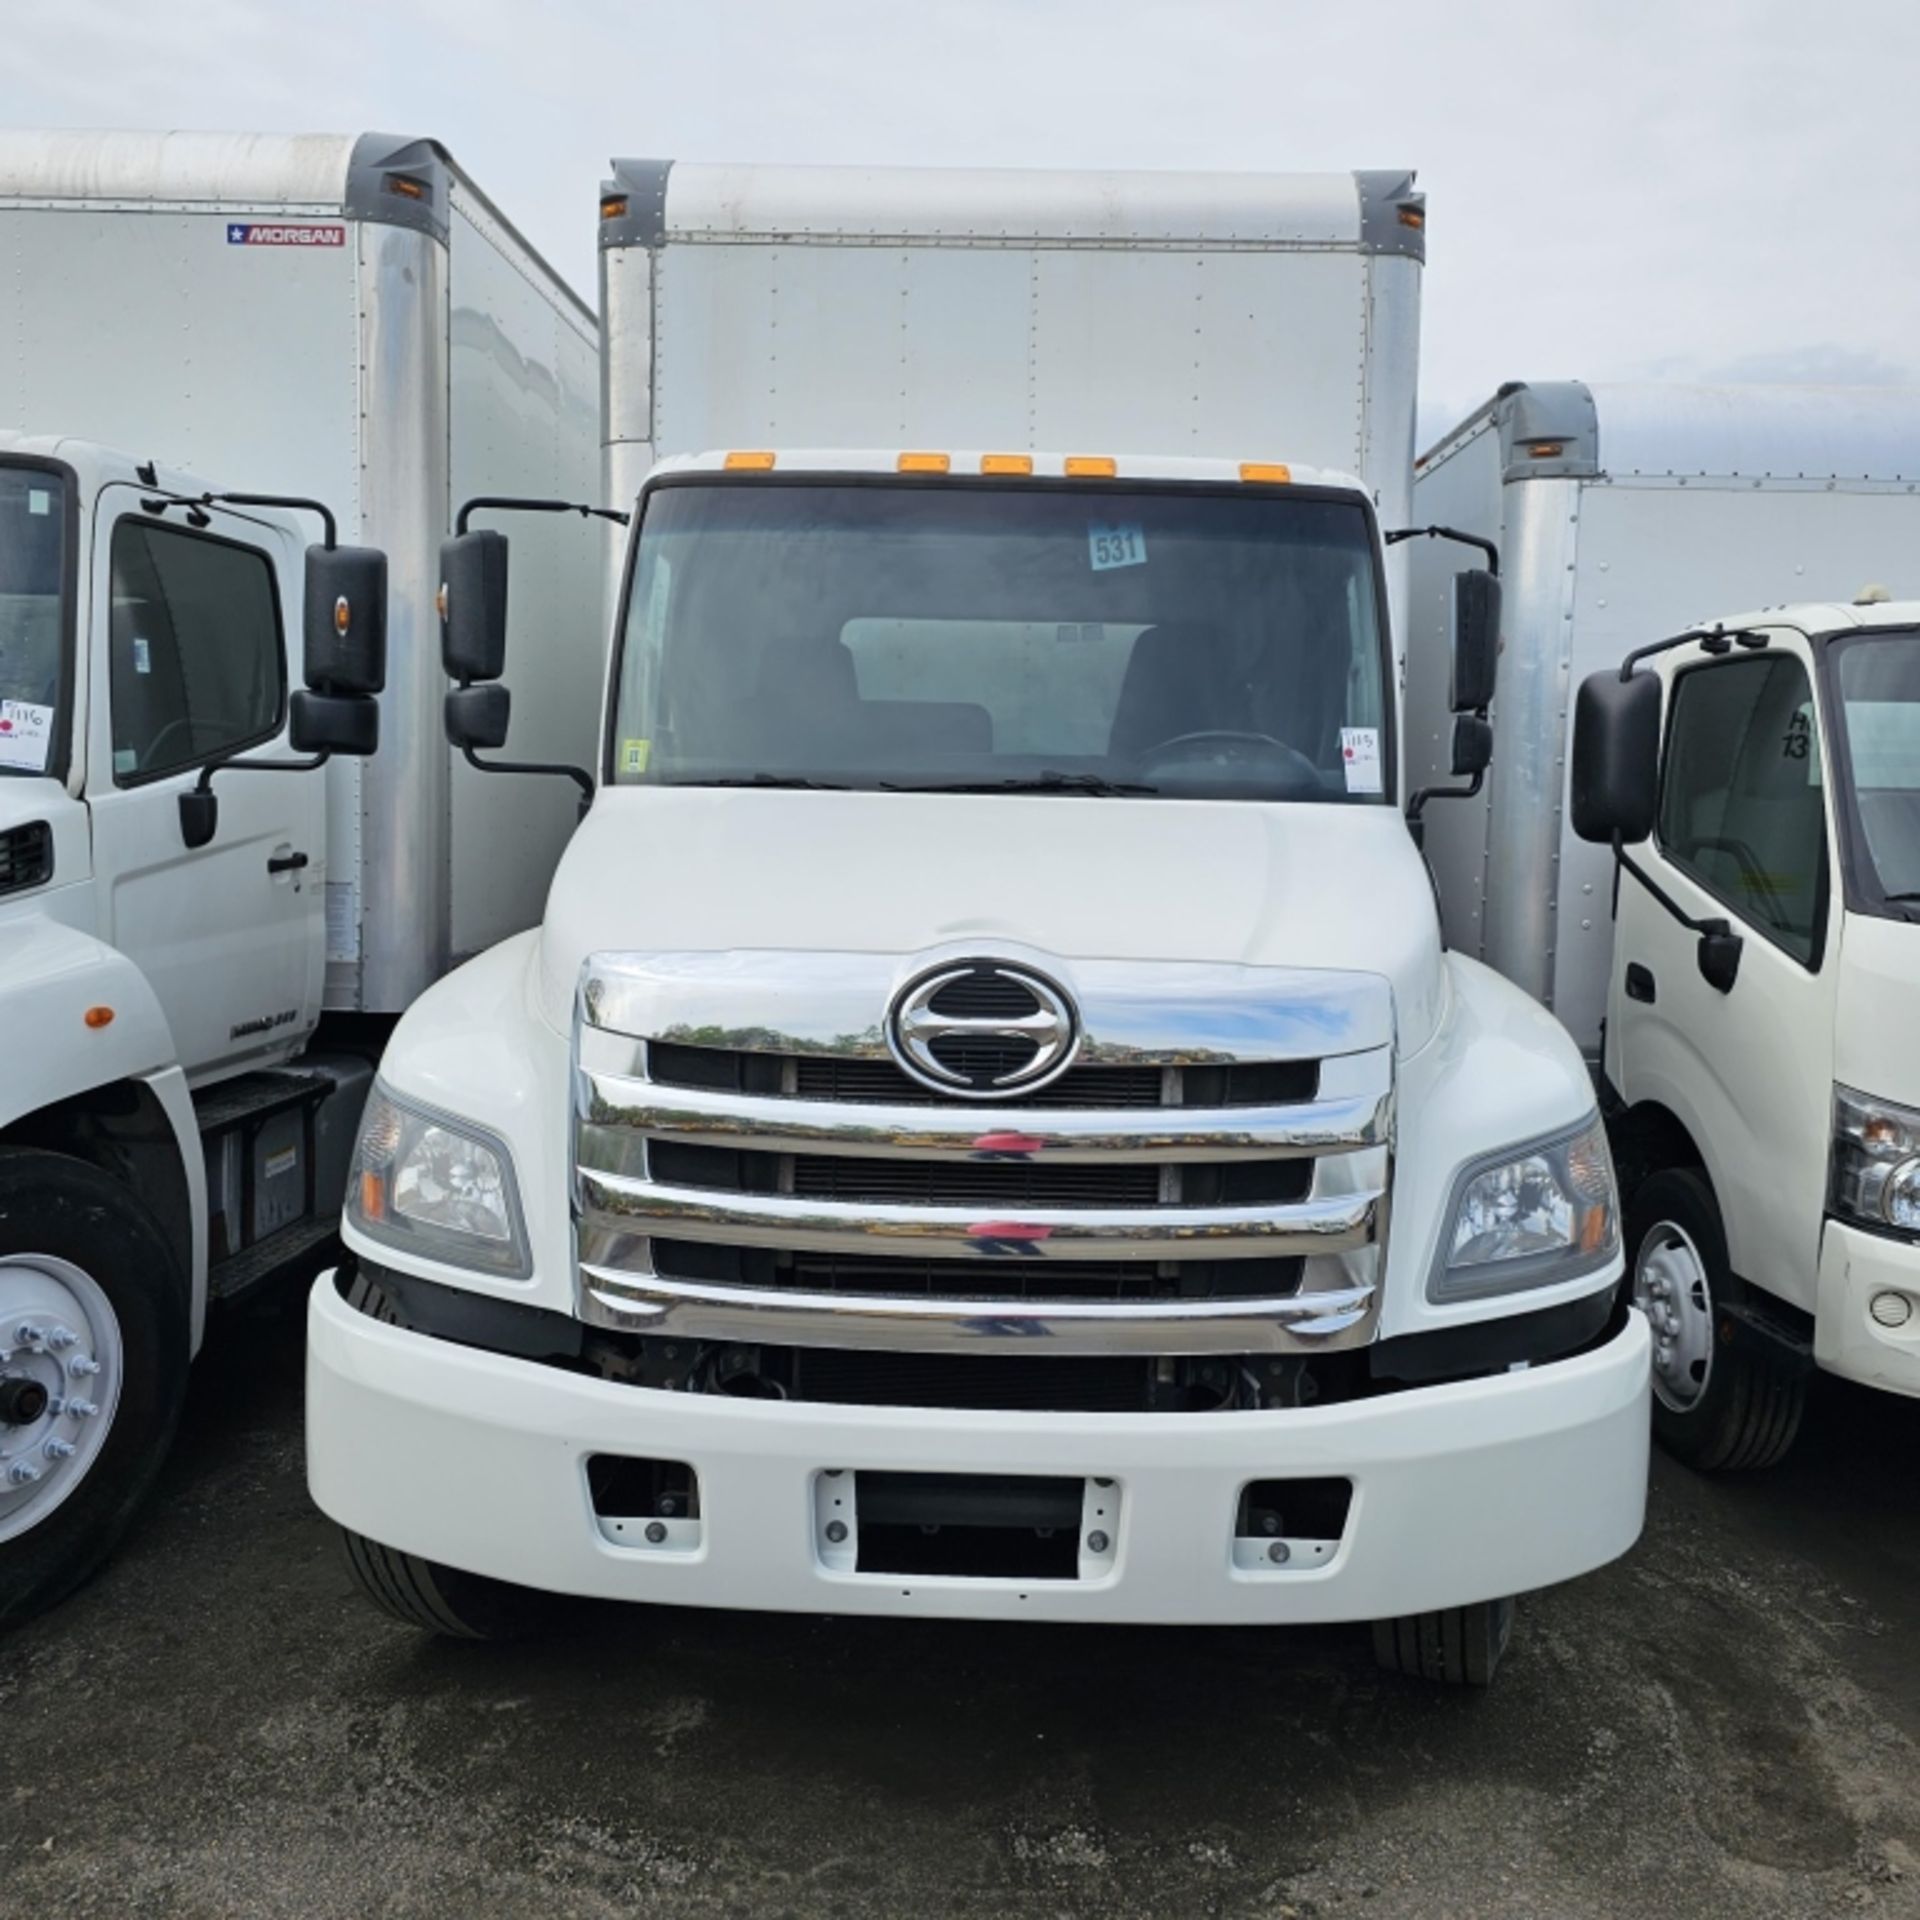 2019 Hino 268 Box Truck - Image 3 of 9